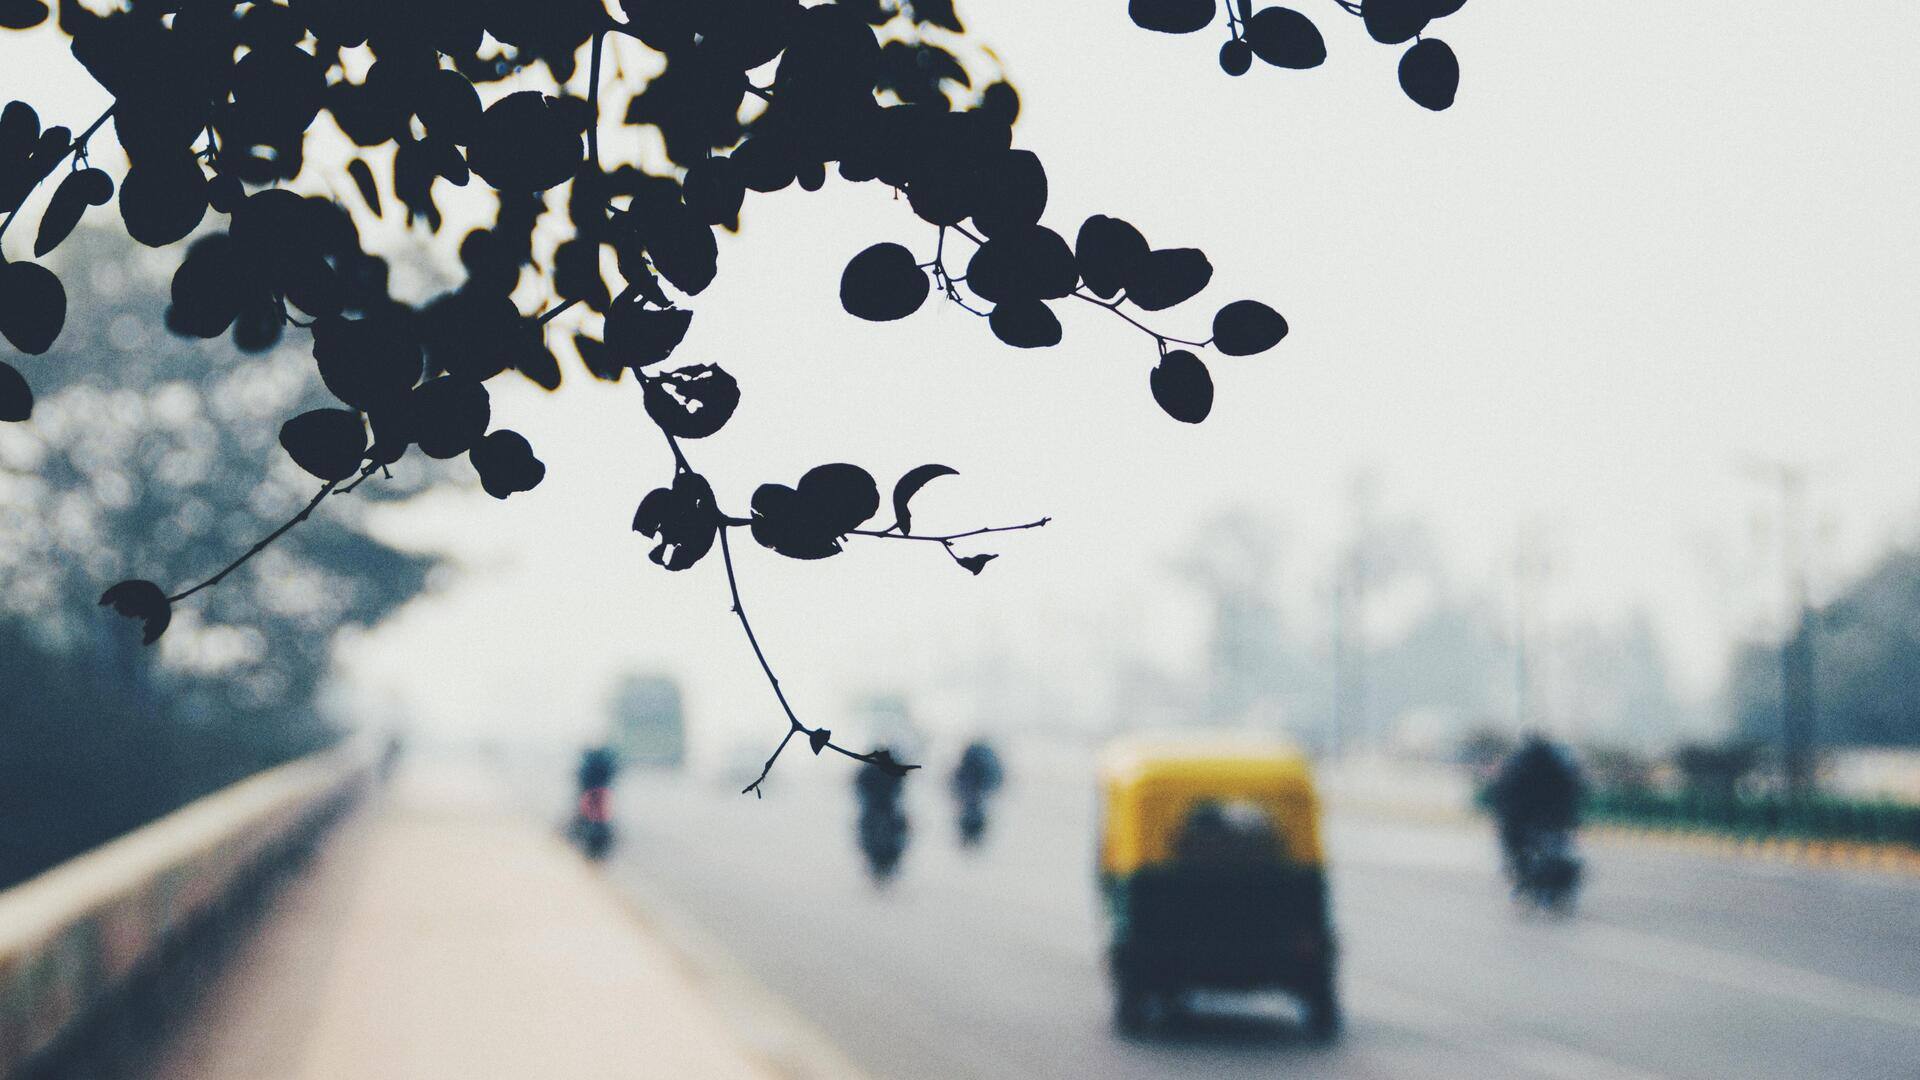 सोमवार को दिल्ली की सबसे सर्द सुबह, न्यूनतम तापमान 6.5 डिग्री सेल्सियस दर्ज